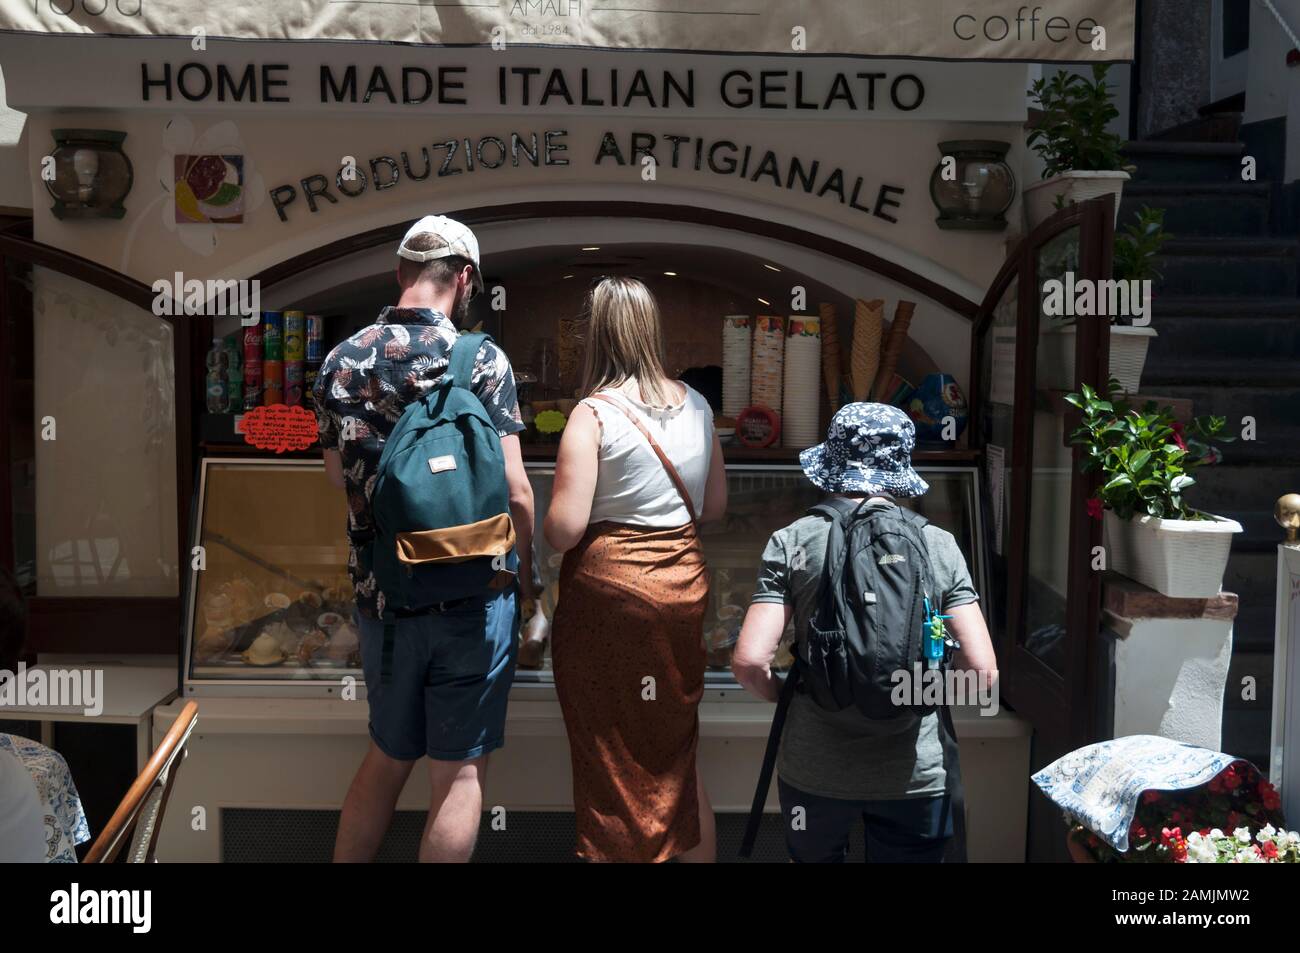 Les visiteurs découvrent les offres sur une place de glace italienne maison à Amalfi, la partie centrale de la côte amalfitaine éponyme, en Italie Banque D'Images